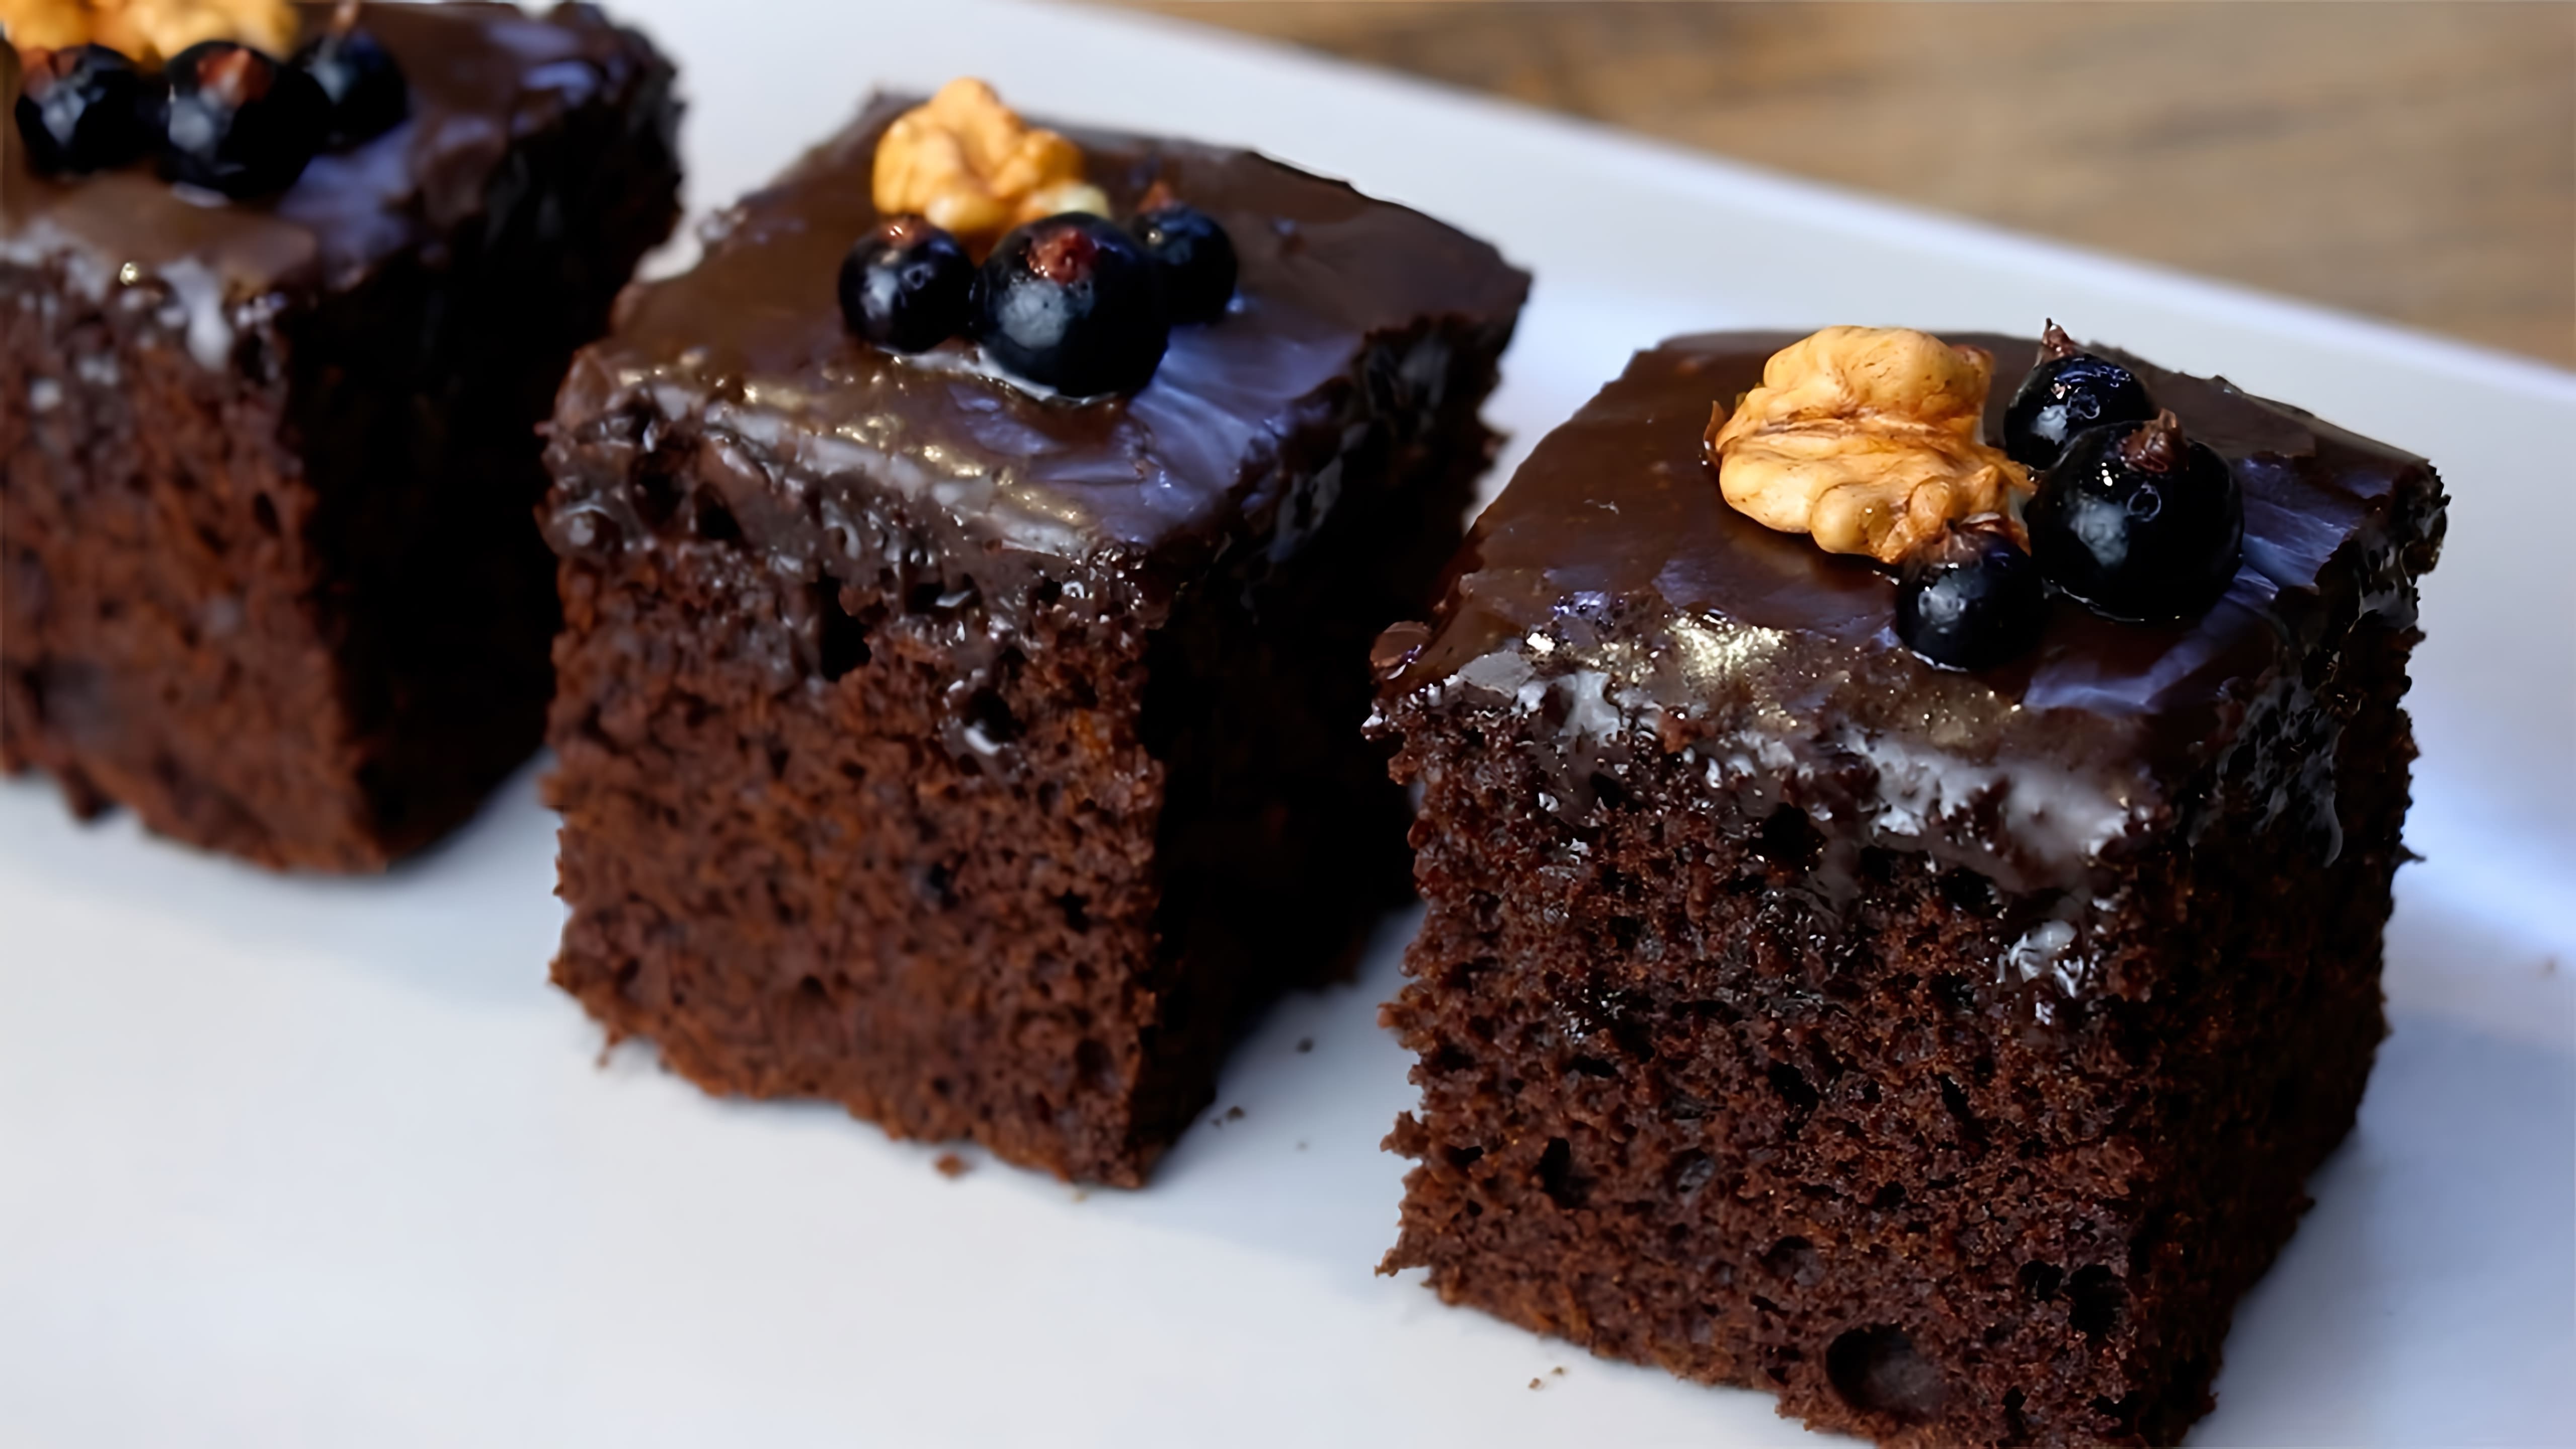 В этом видео демонстрируется рецепт приготовления шоколадного торта Брауни